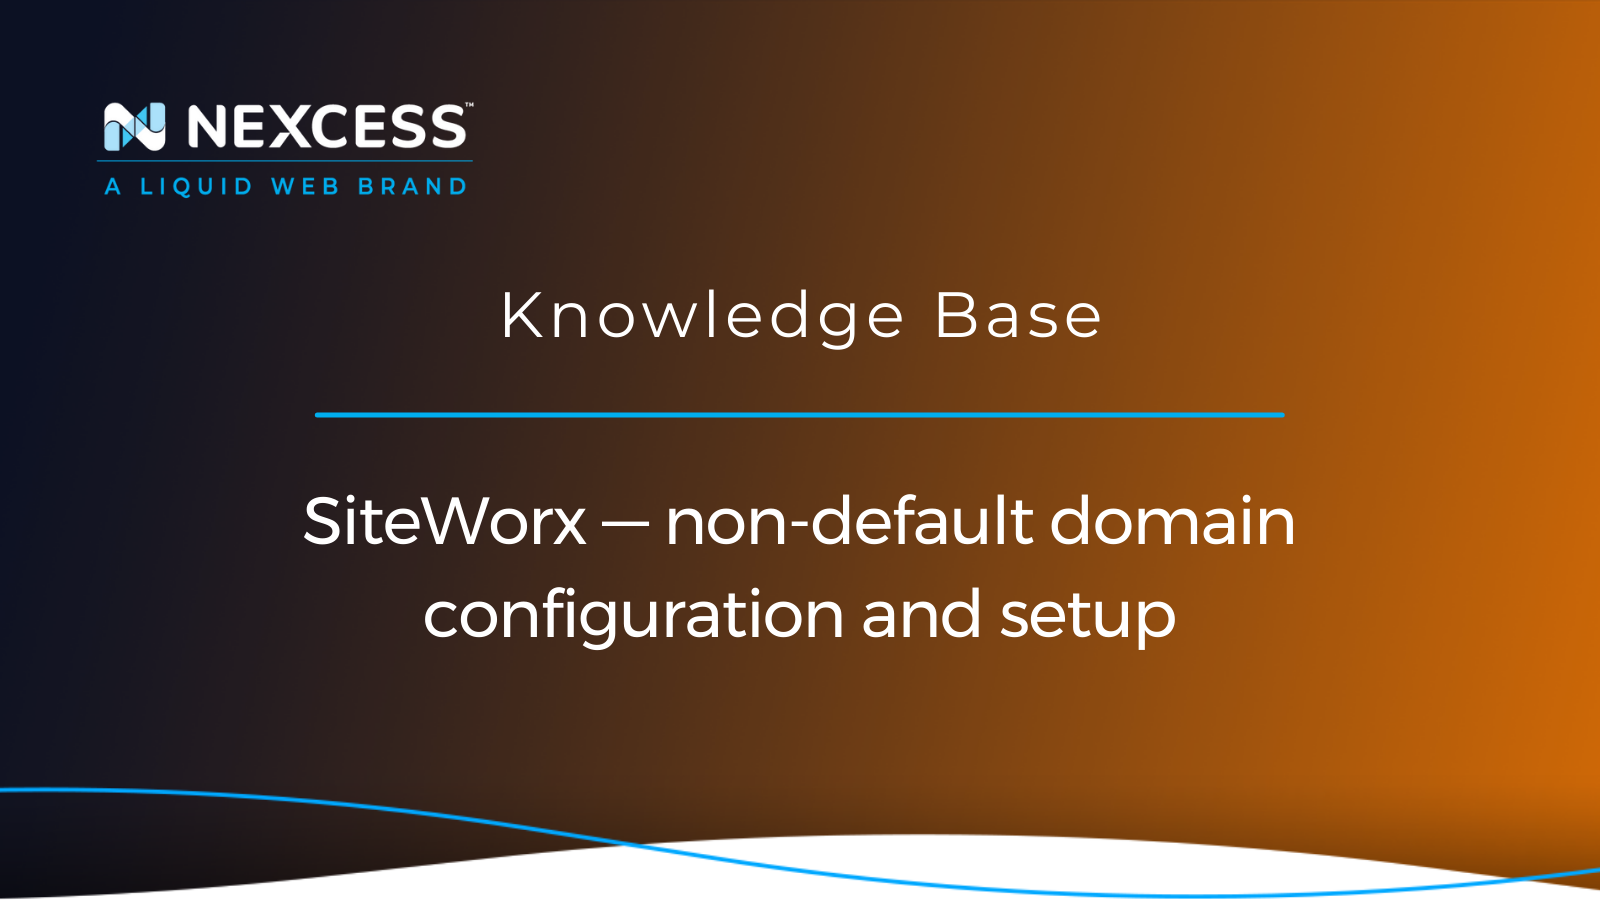 SiteWorx — non-default domain configuration and setup